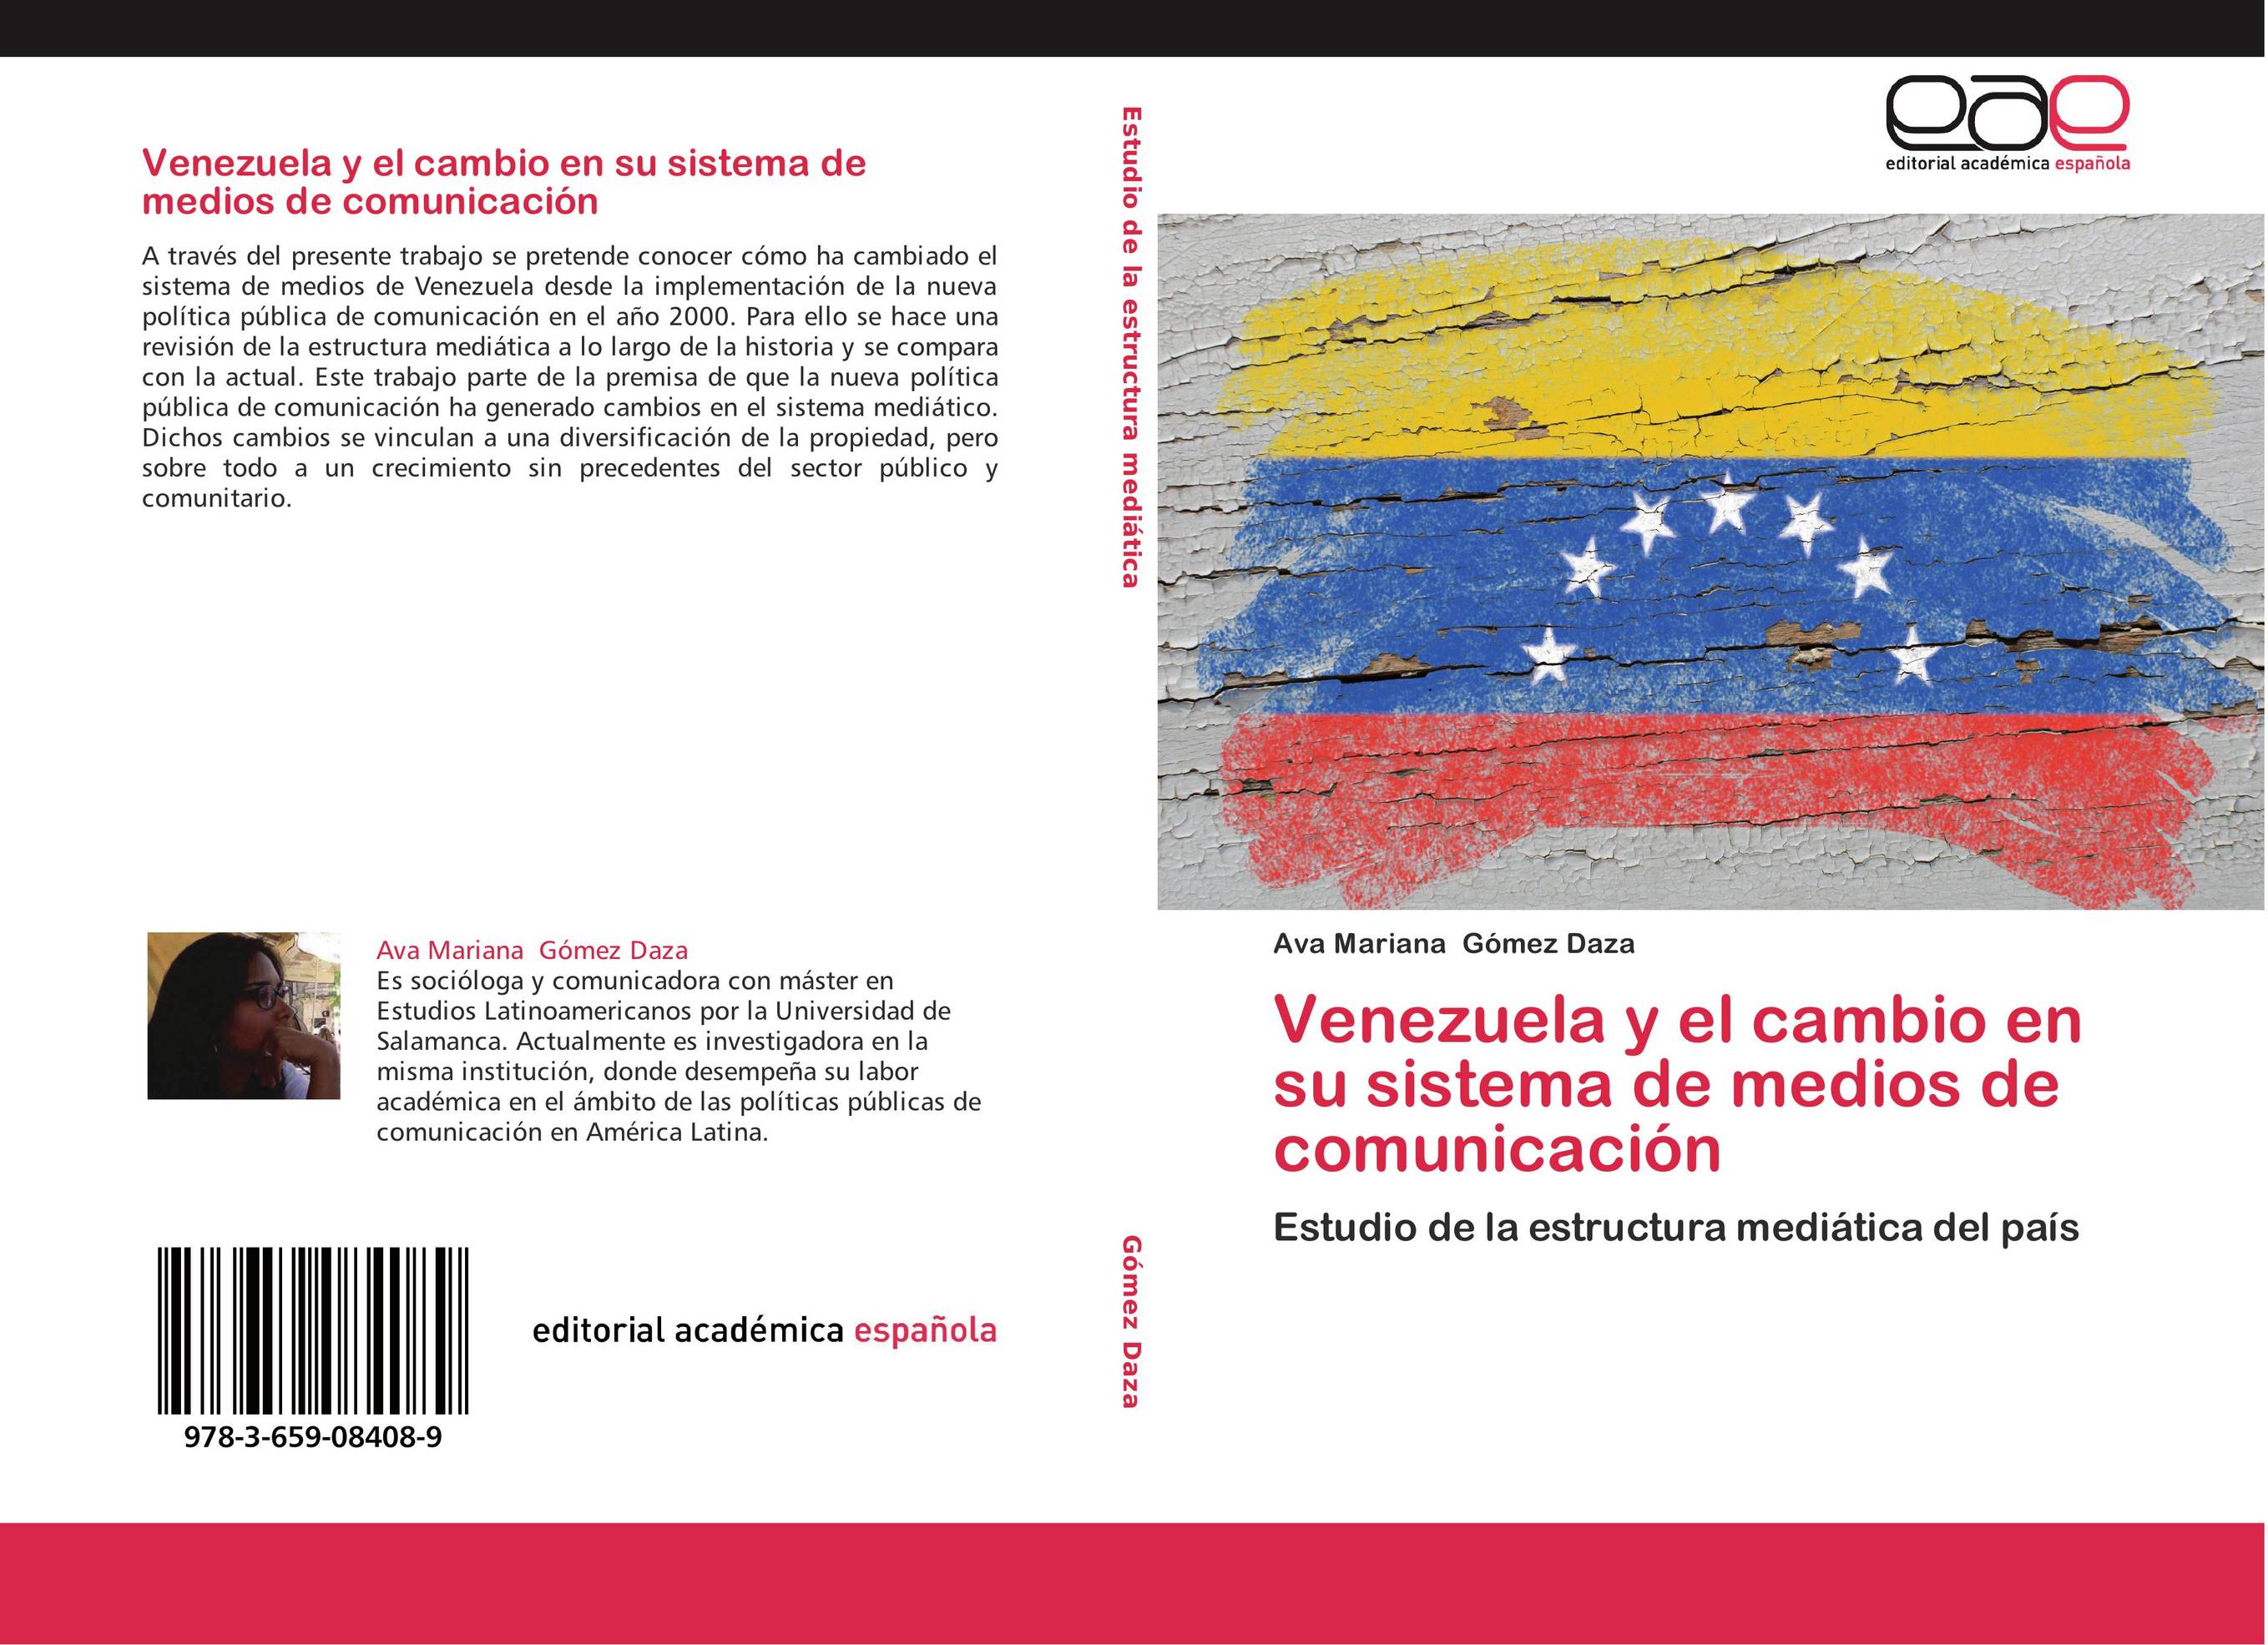 Venezuela y el cambio en su sistema de medios de comunicación